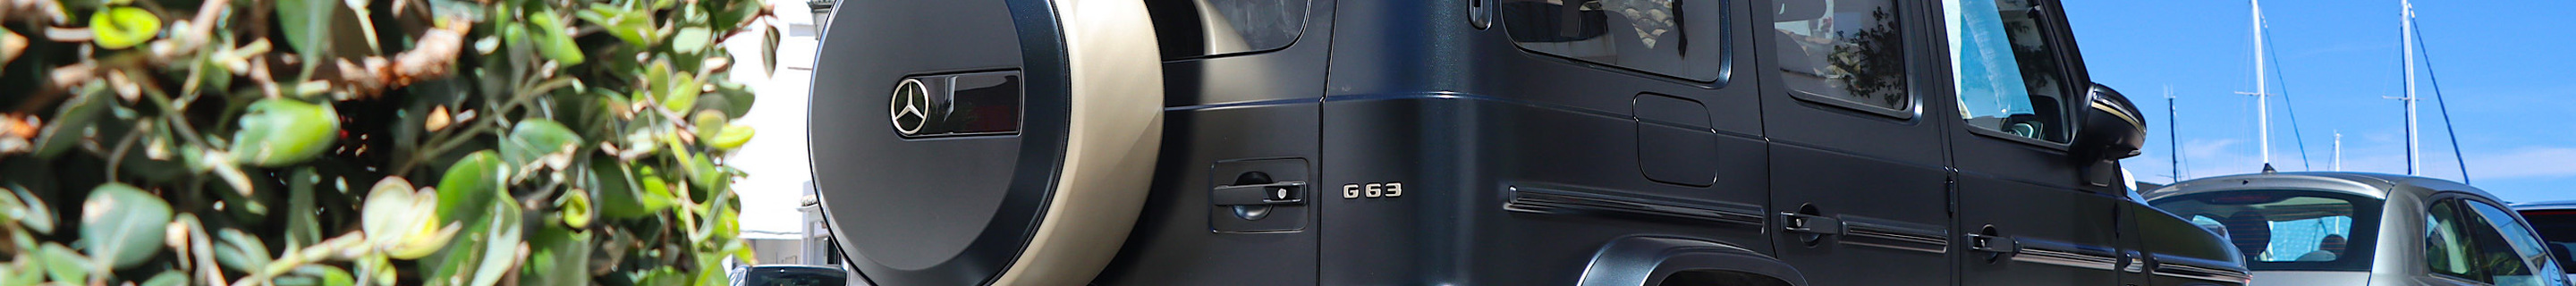 Mercedes-AMG G 63 W463 2018 Grand Edition